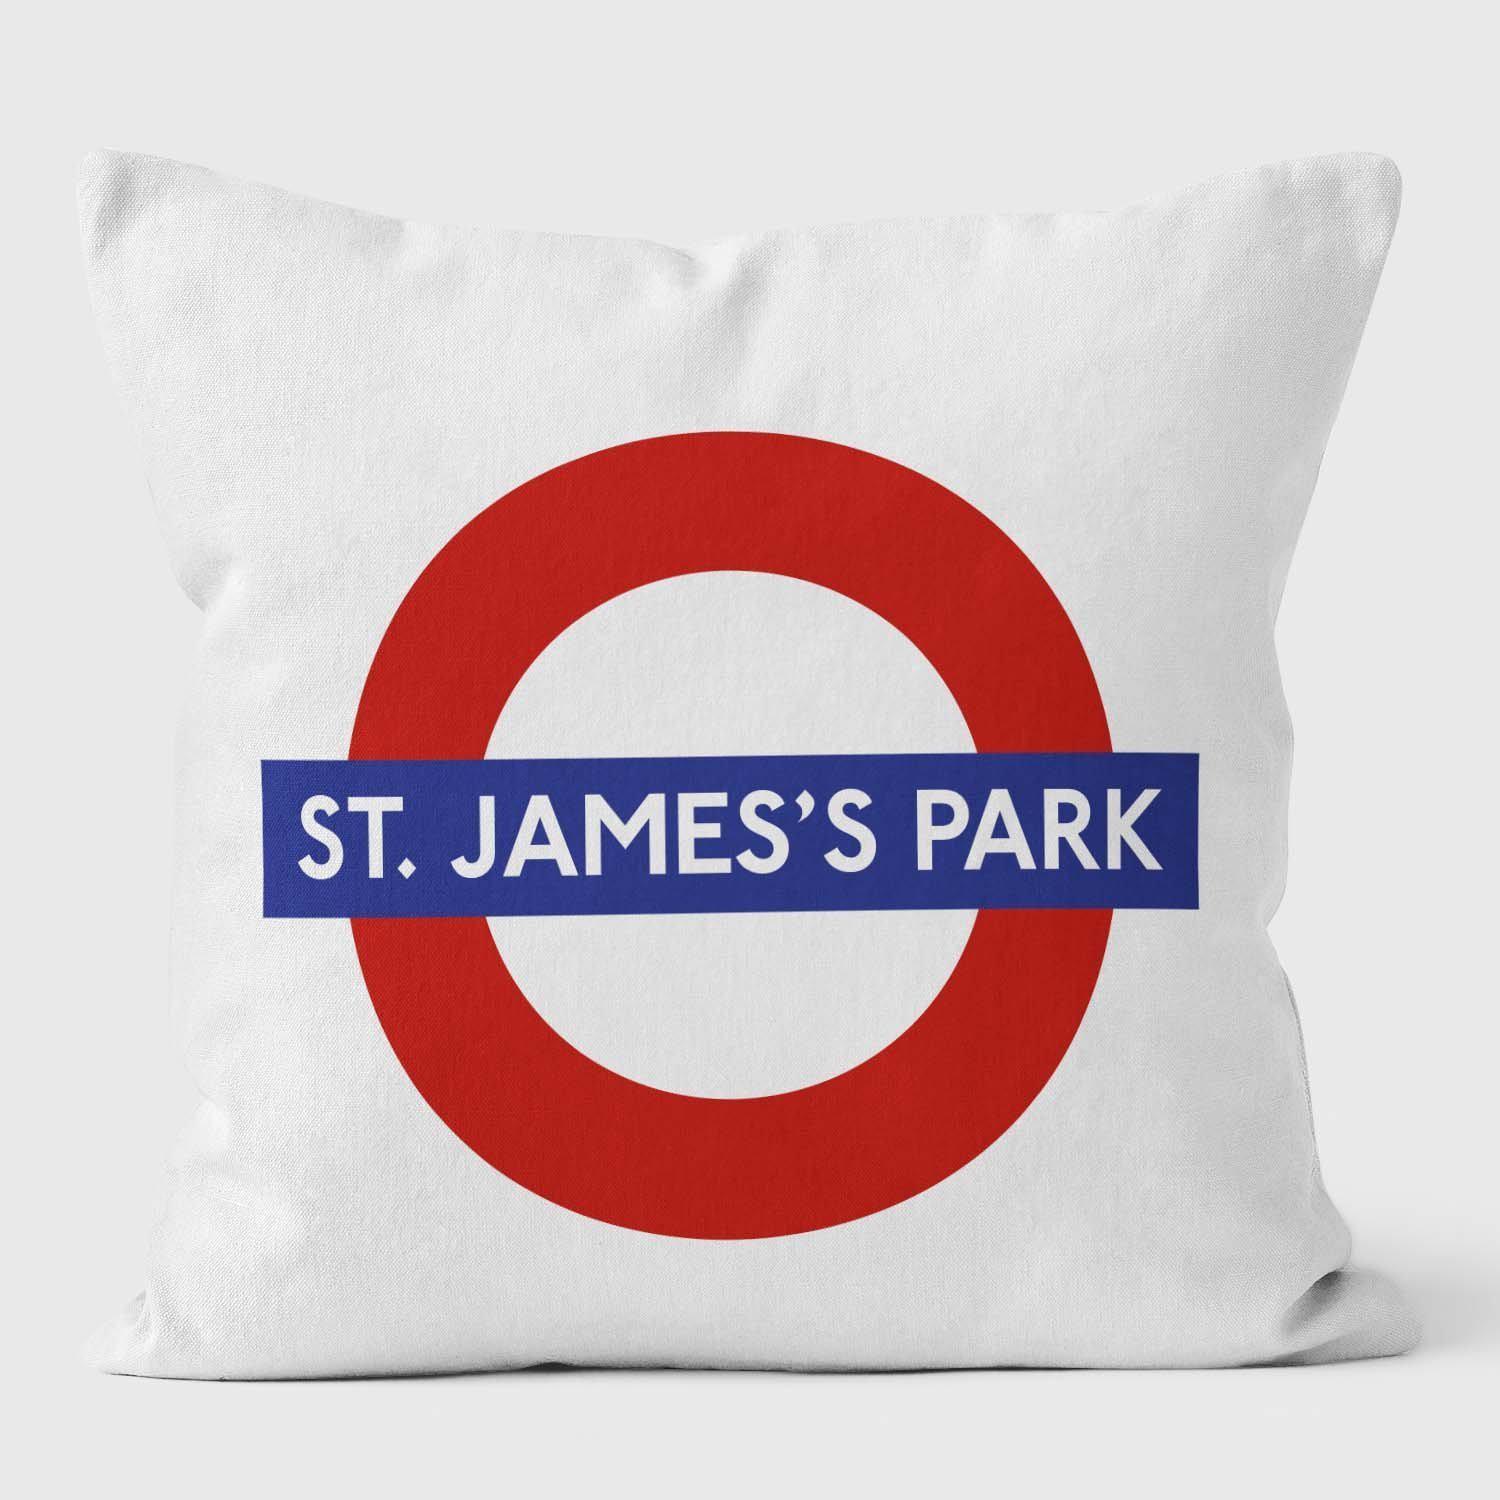 St. James Park London Underground Tube Station Roundel Cushion - Handmade Cushions UK - WeLoveCushions